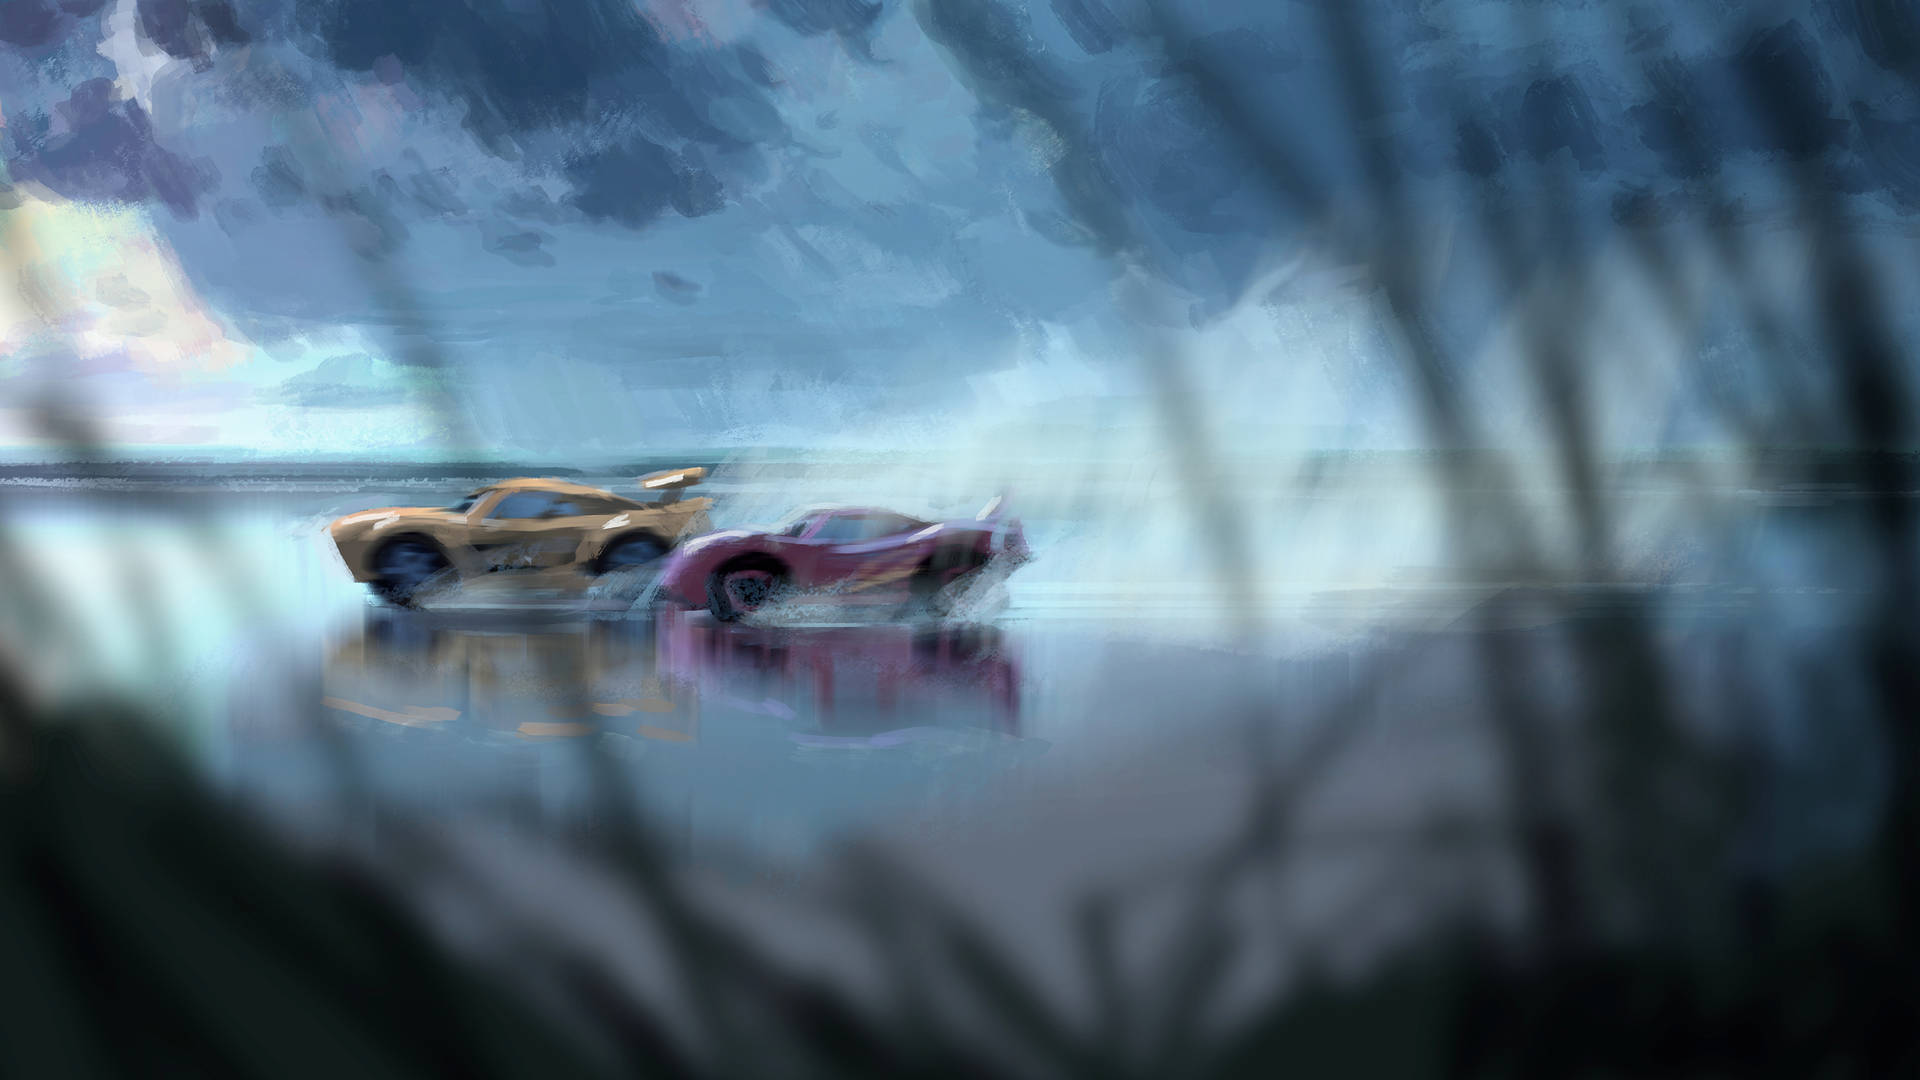 Lightning McQueen and Cruz Ramirez in Action - Cars 3 Wallpaper